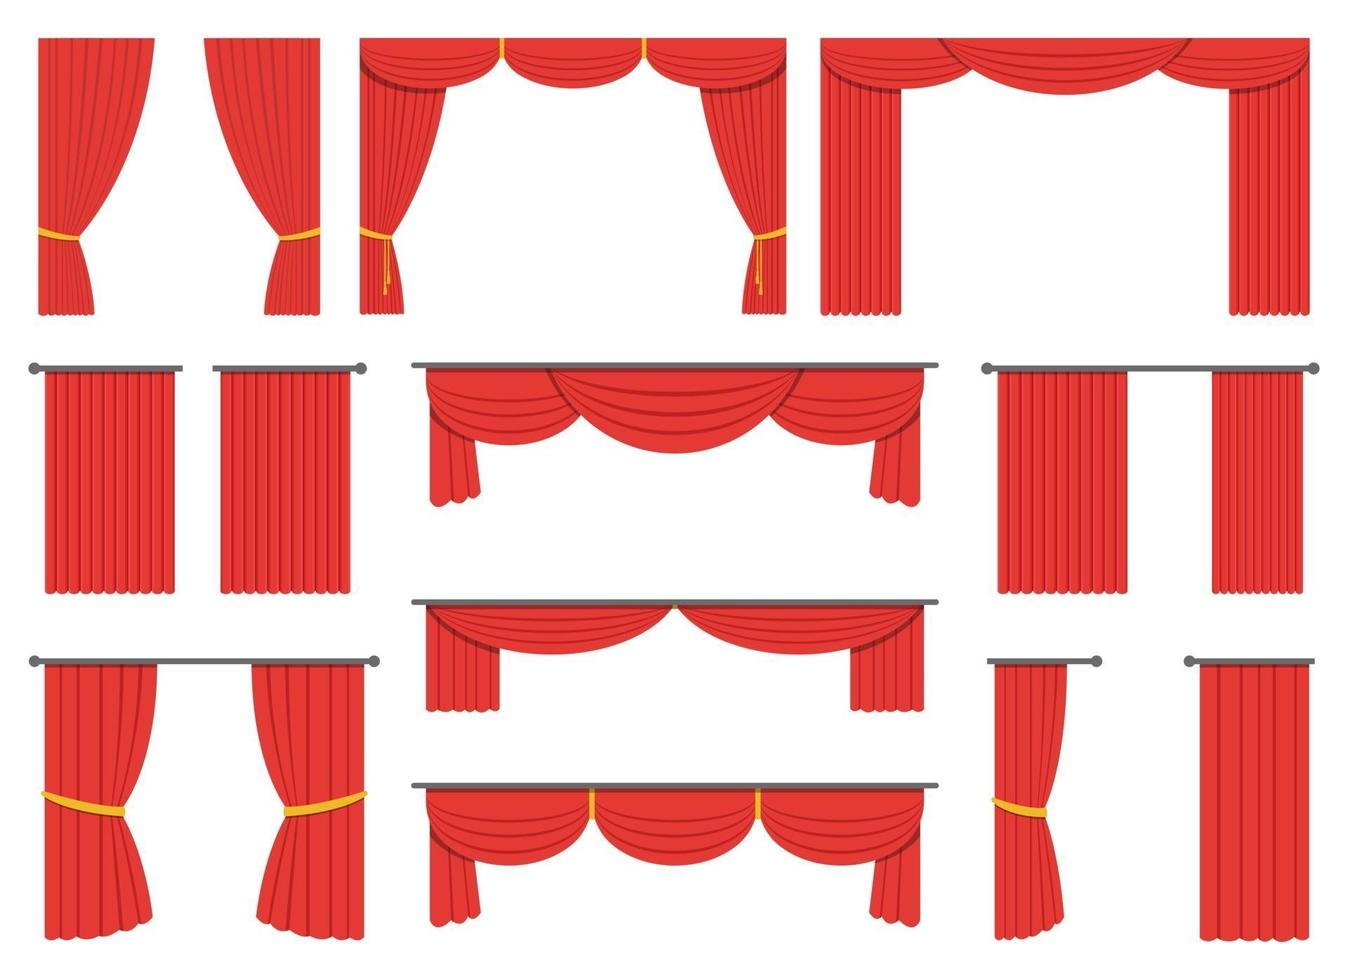 cortina de teatro desenho ilustração vetorial conjunto isolado no fundo branco vetor